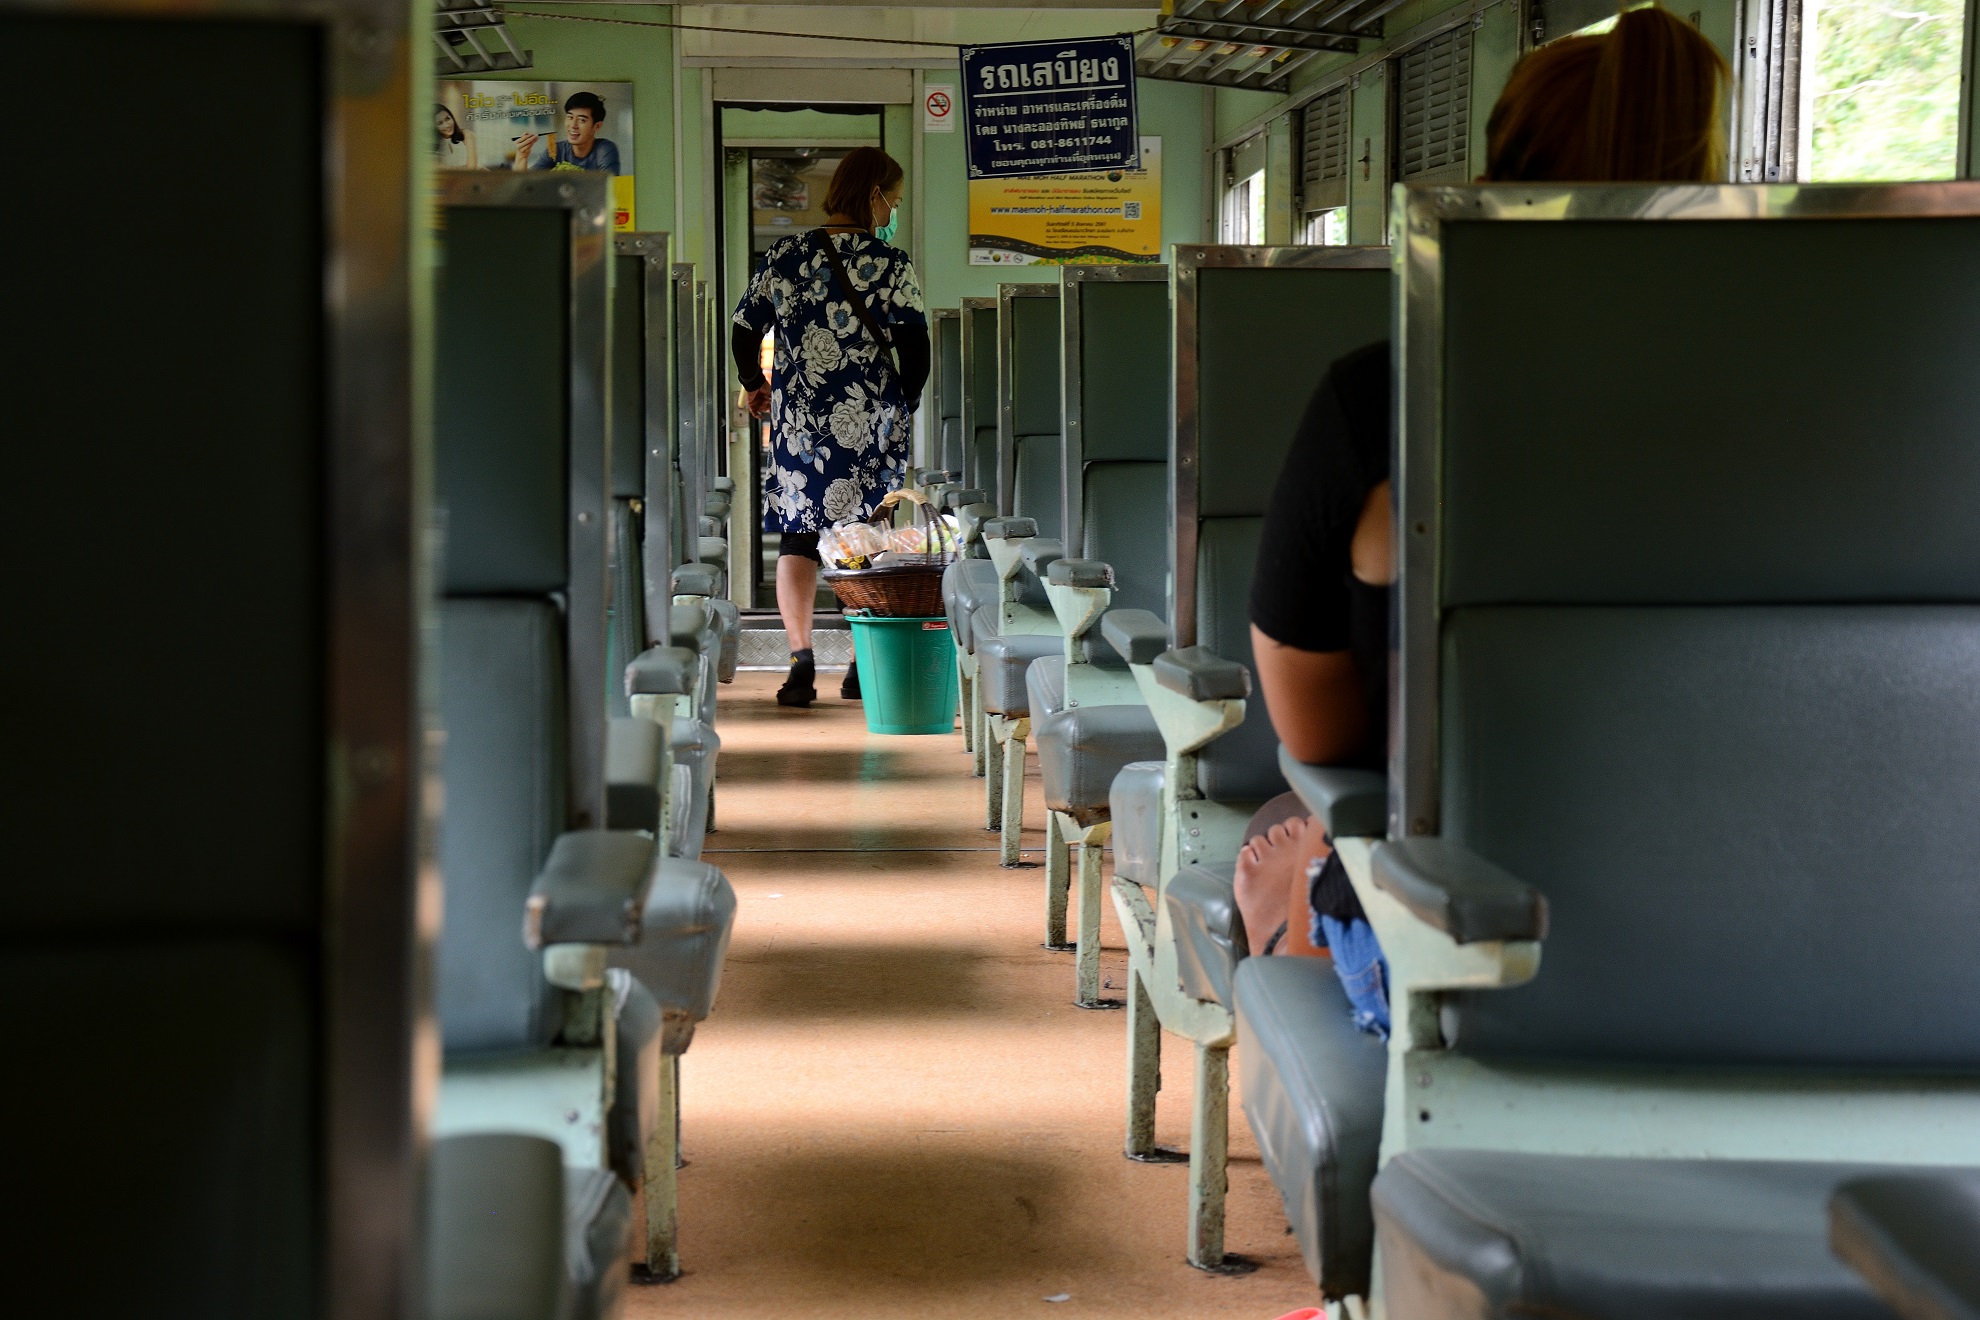 3rd class trains in Thailand